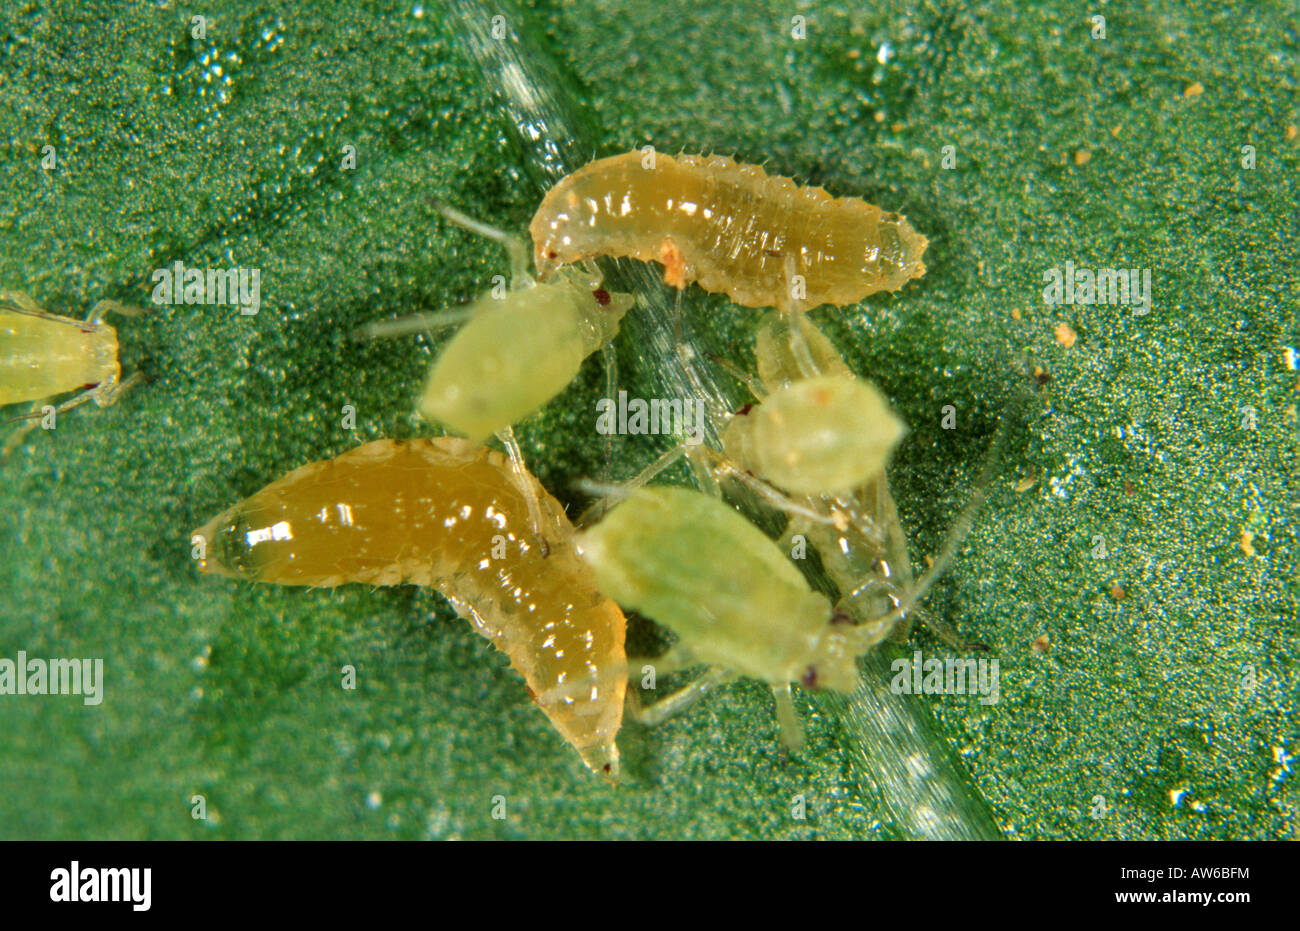 Predatory midge Aphidoletes aphidimyza aphid predator with greenfly prey Stock Photo